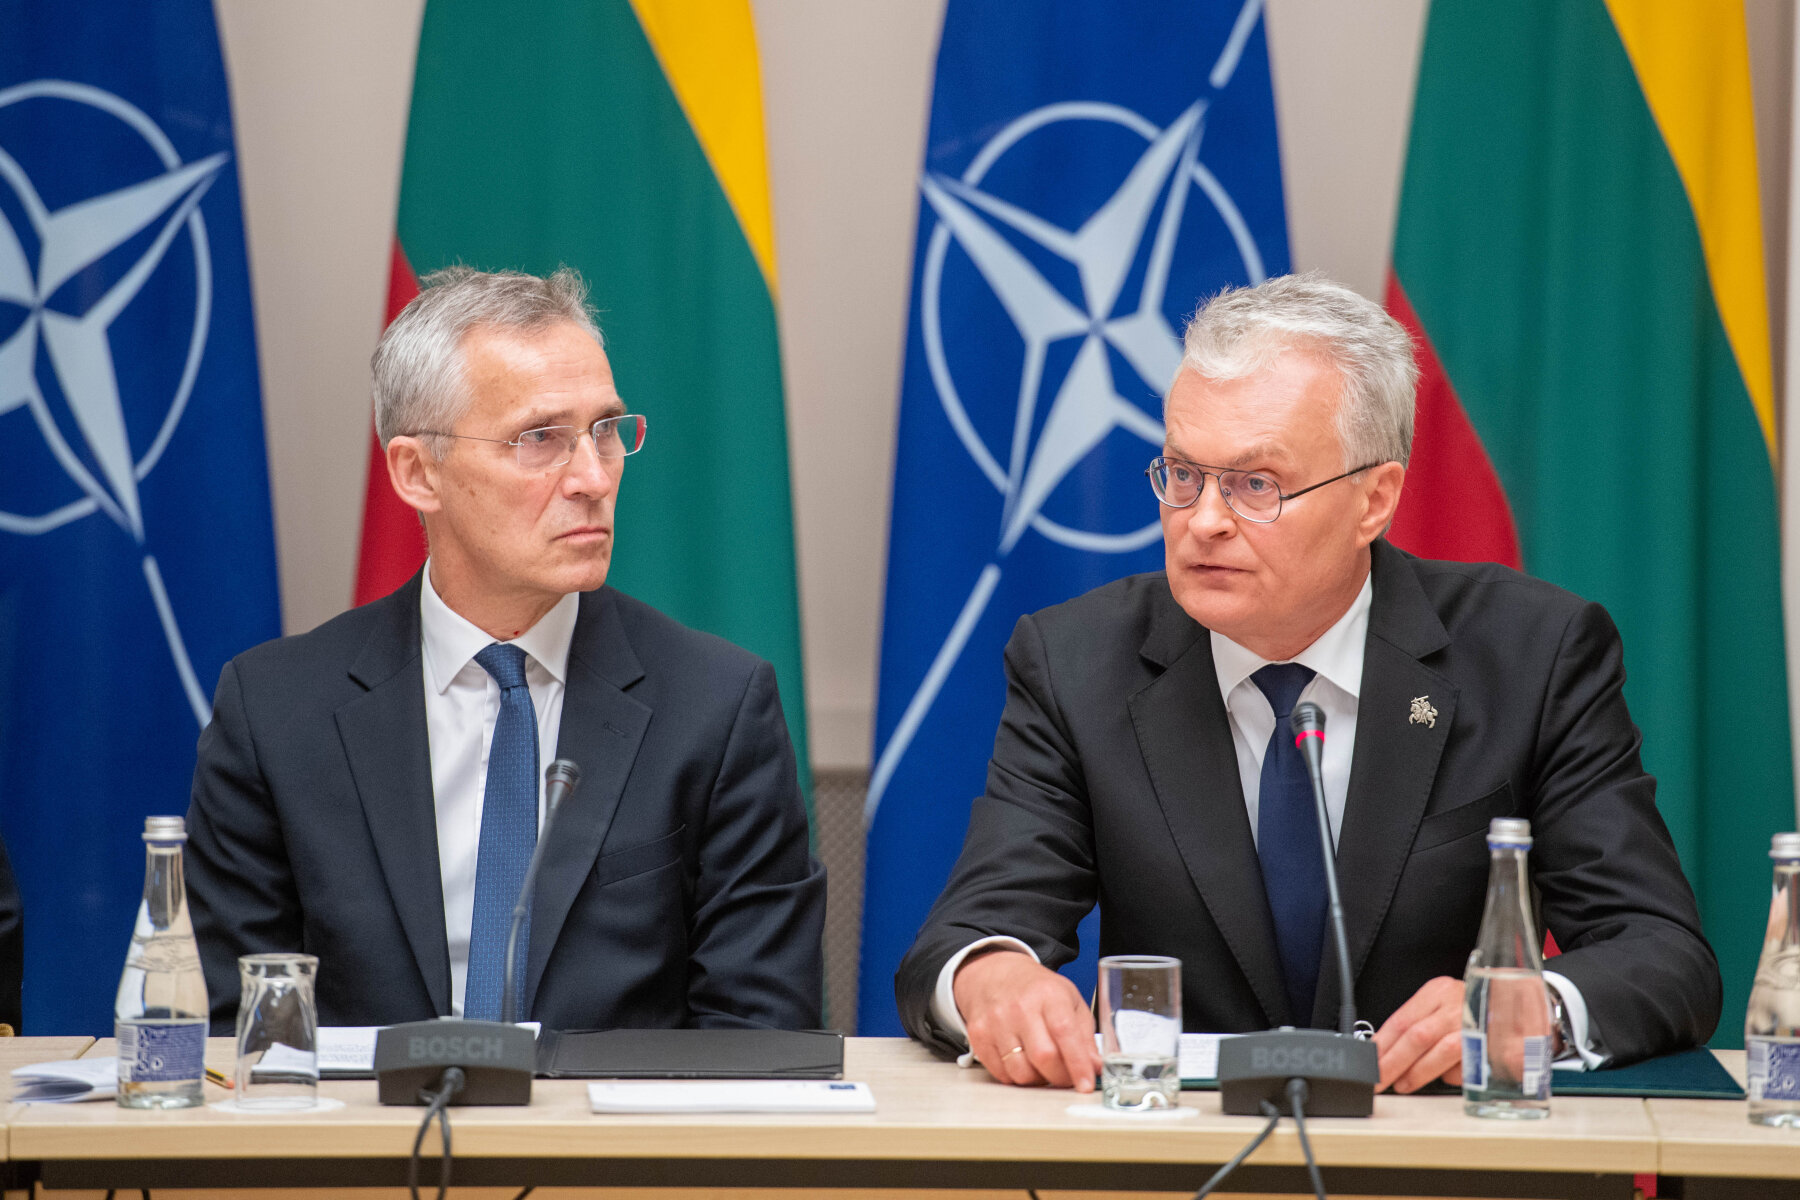 Nausėda omówi z Stoltenbergiem przygotowania do lipcowego szczytu NATO w Wilnie, a także sytuację bezpieczeństwa w regionie.